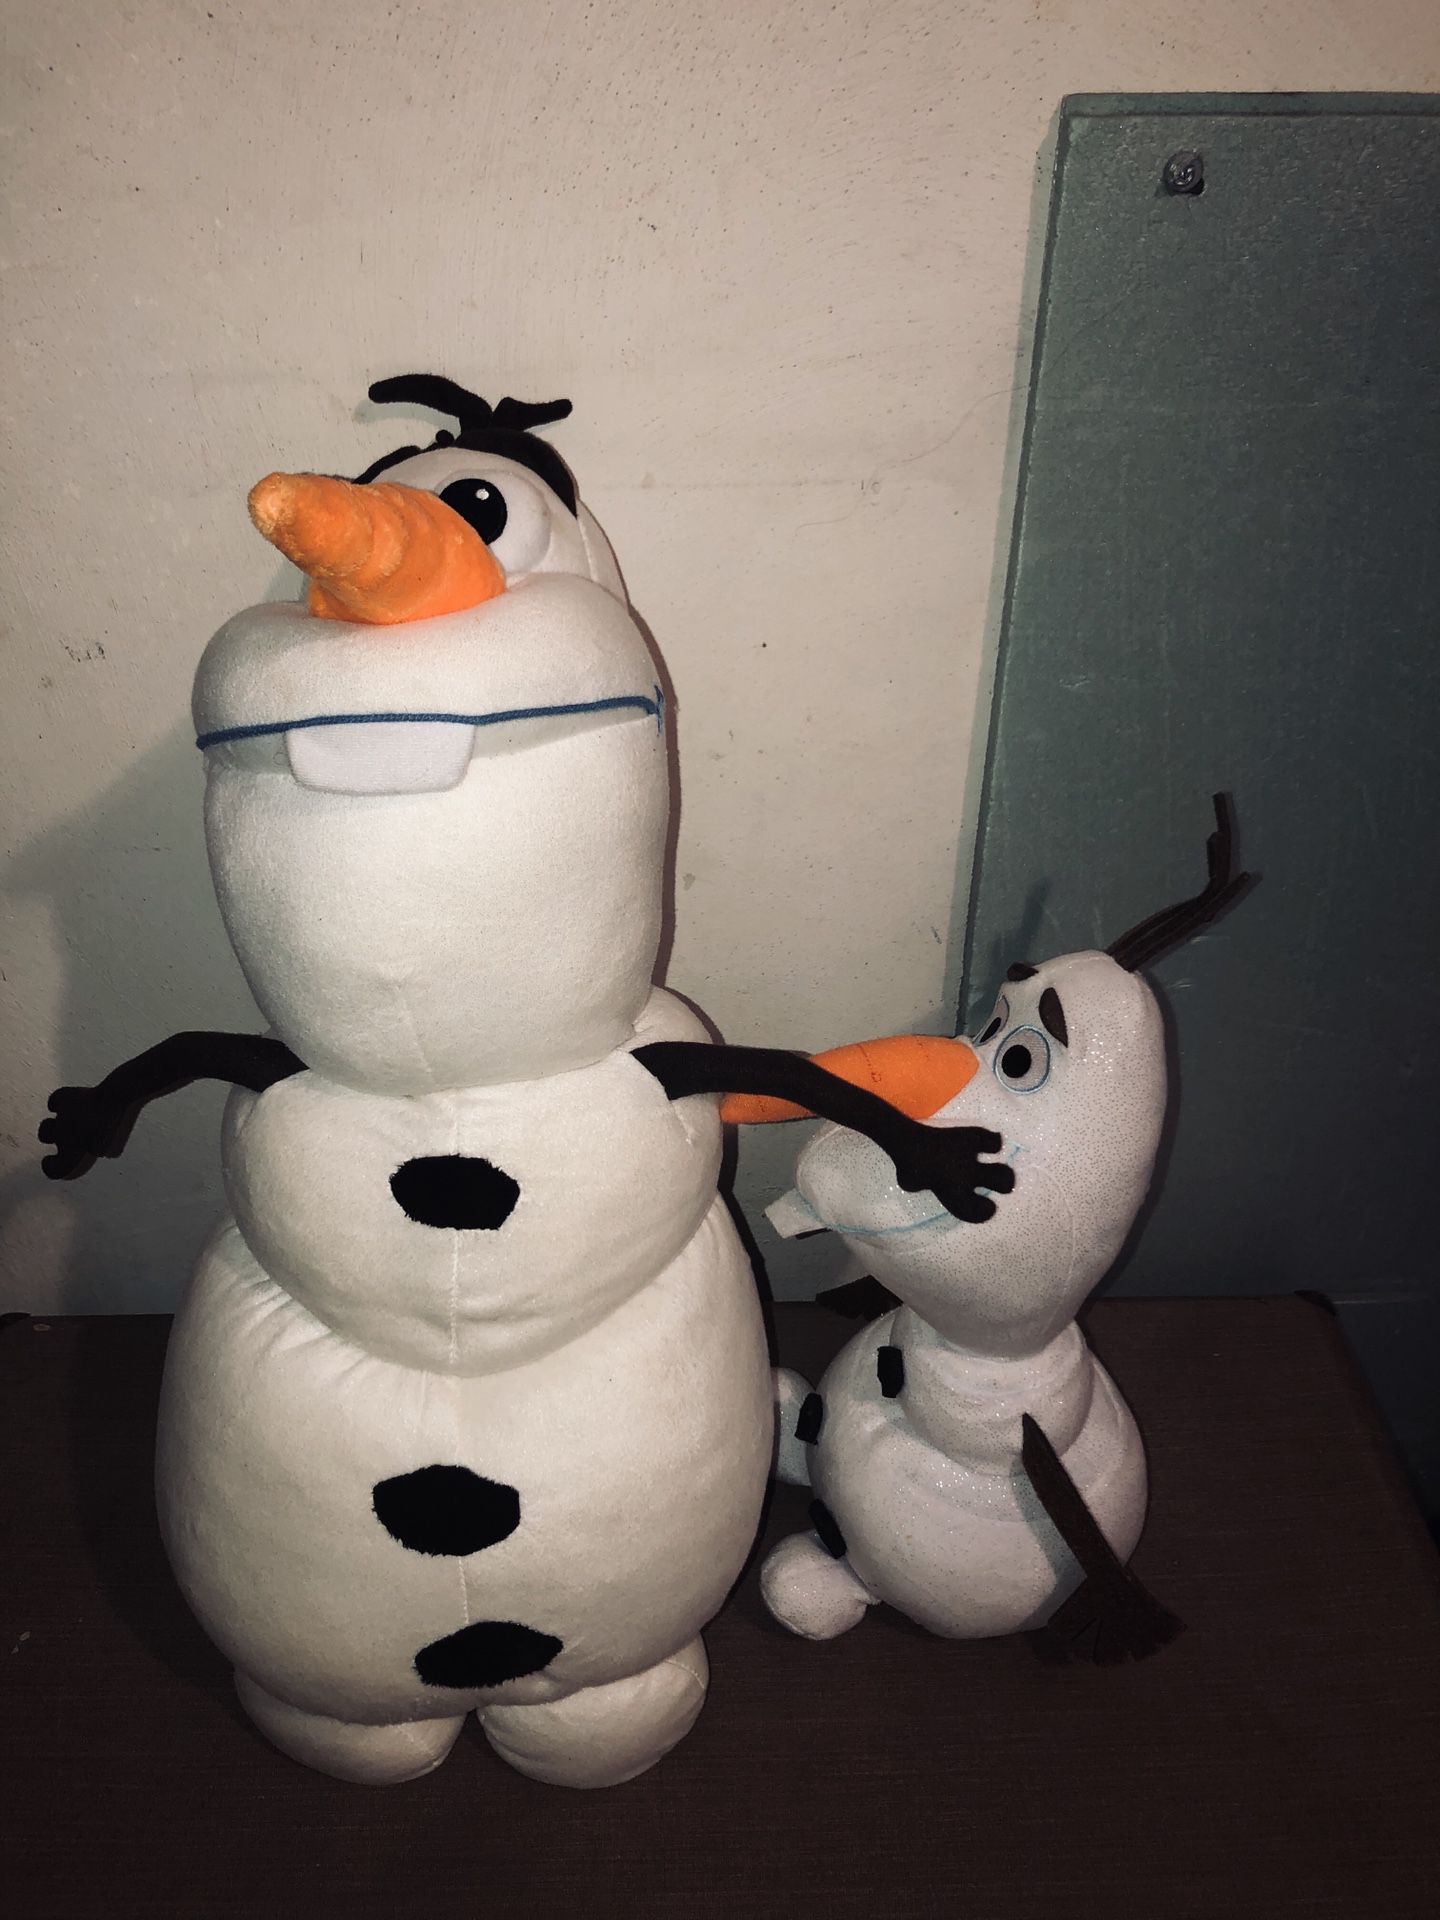 2 stuffed Olaf dolls